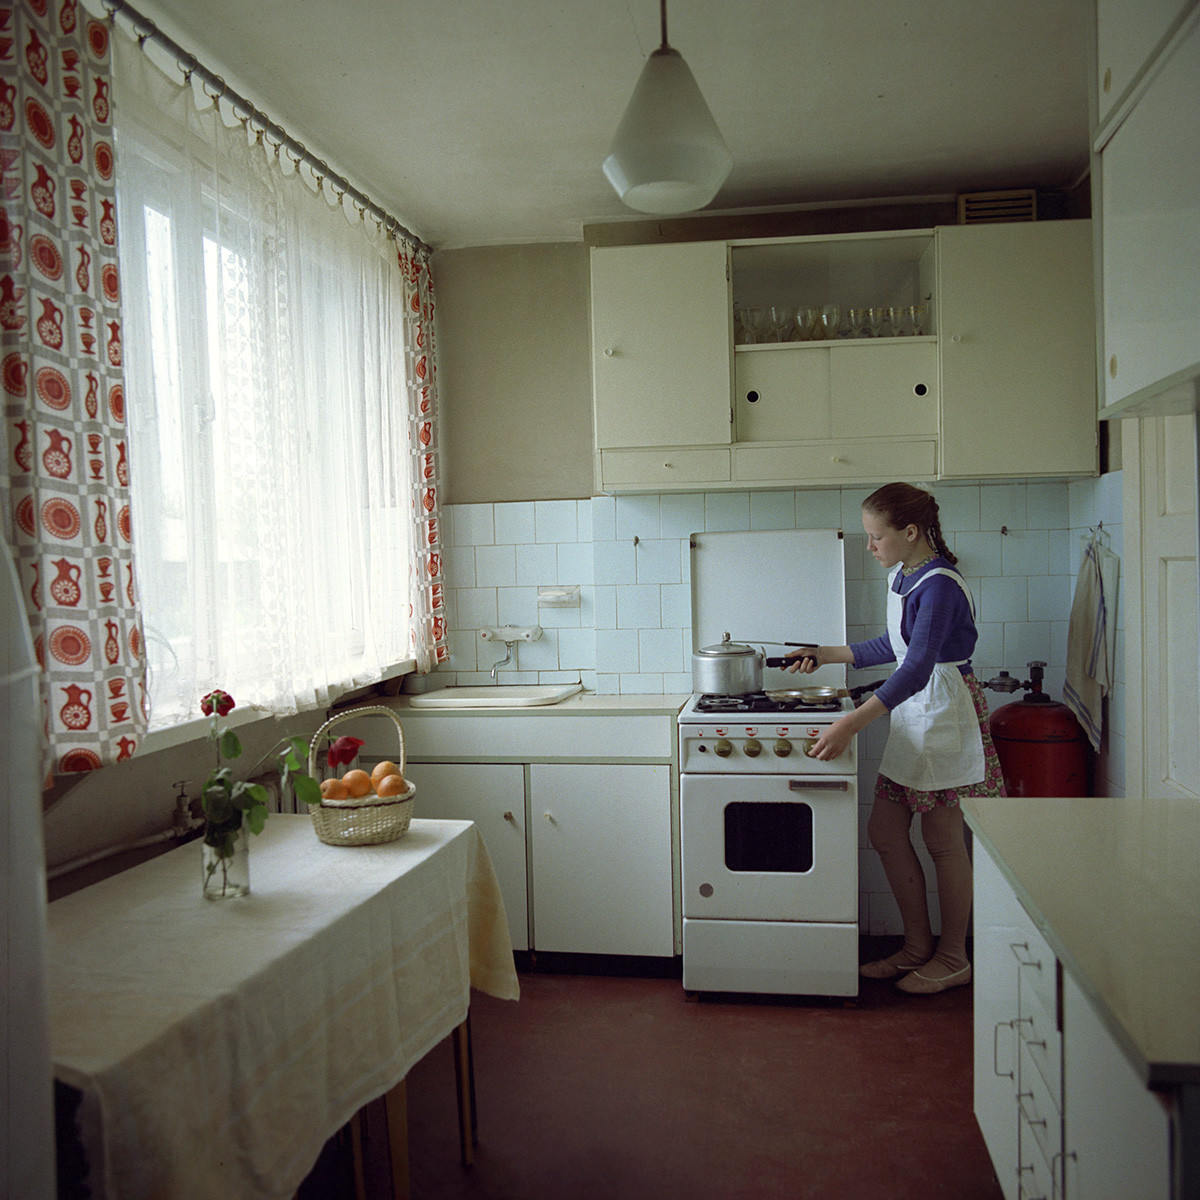 Кухонное убранство жителей Латвийской ССР, 1974 г.